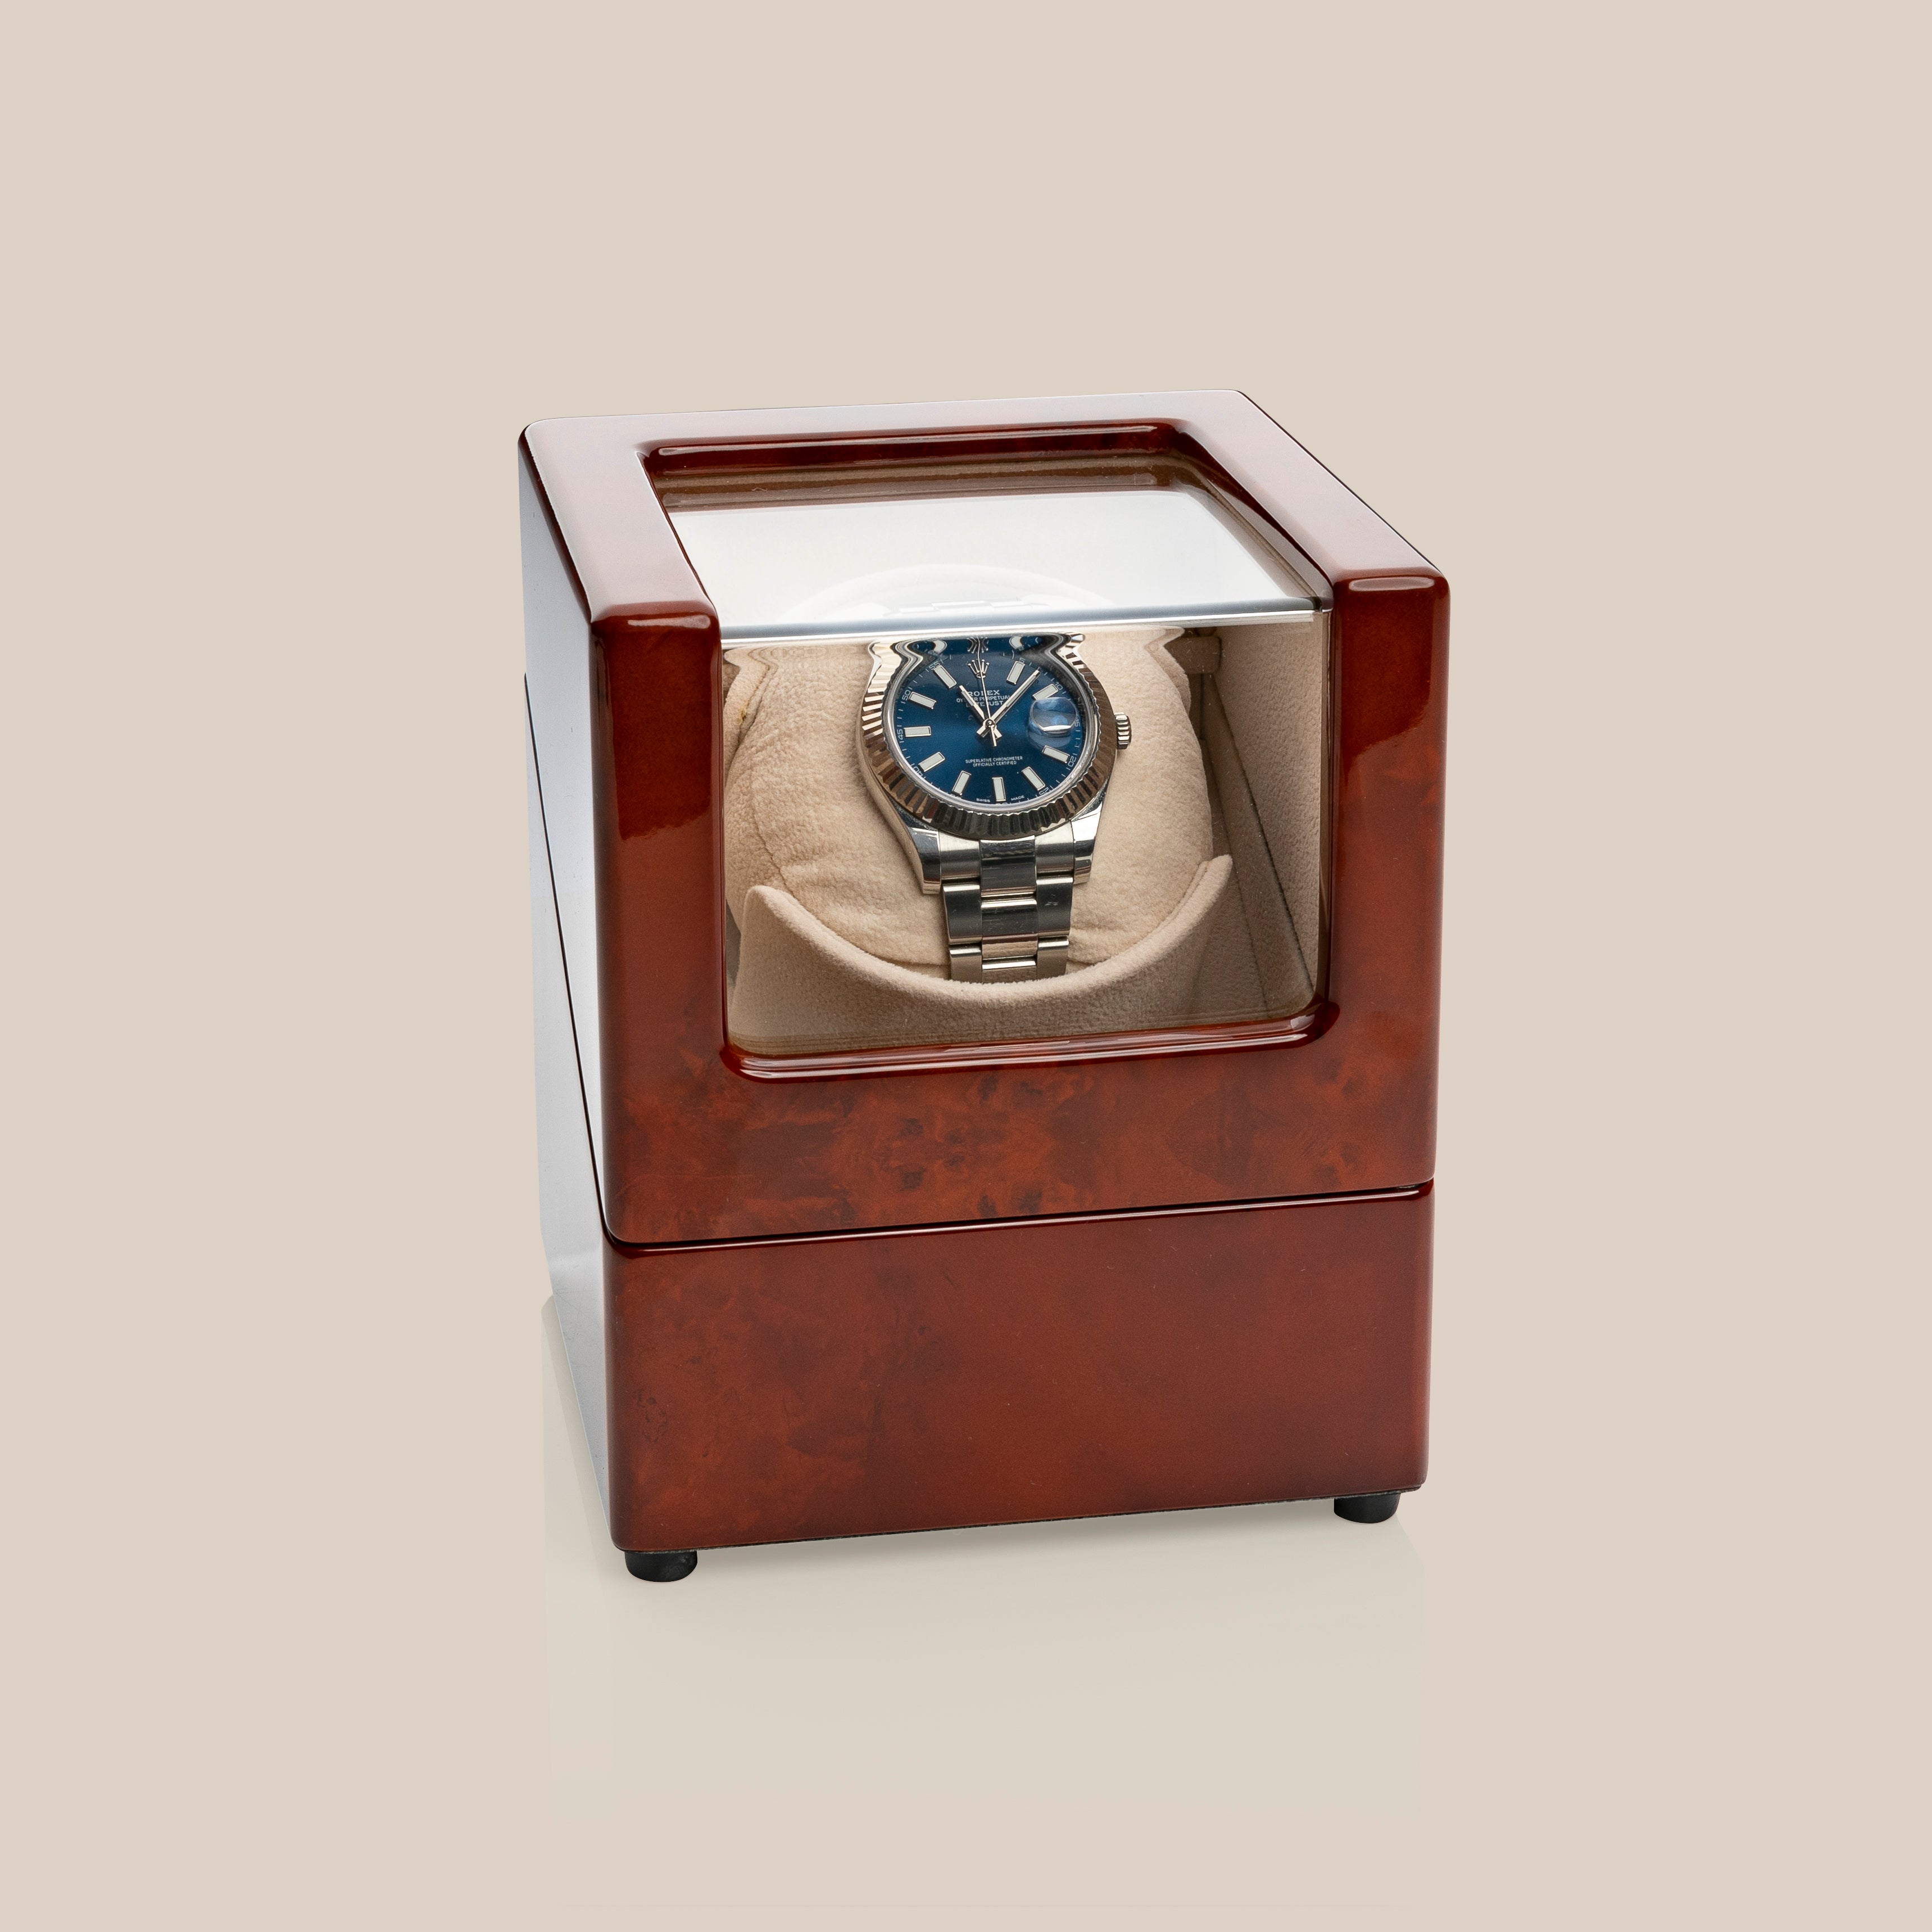 WW78 Avvolgitore per orologi automatici (Marrone/Camello) - 1 orologi